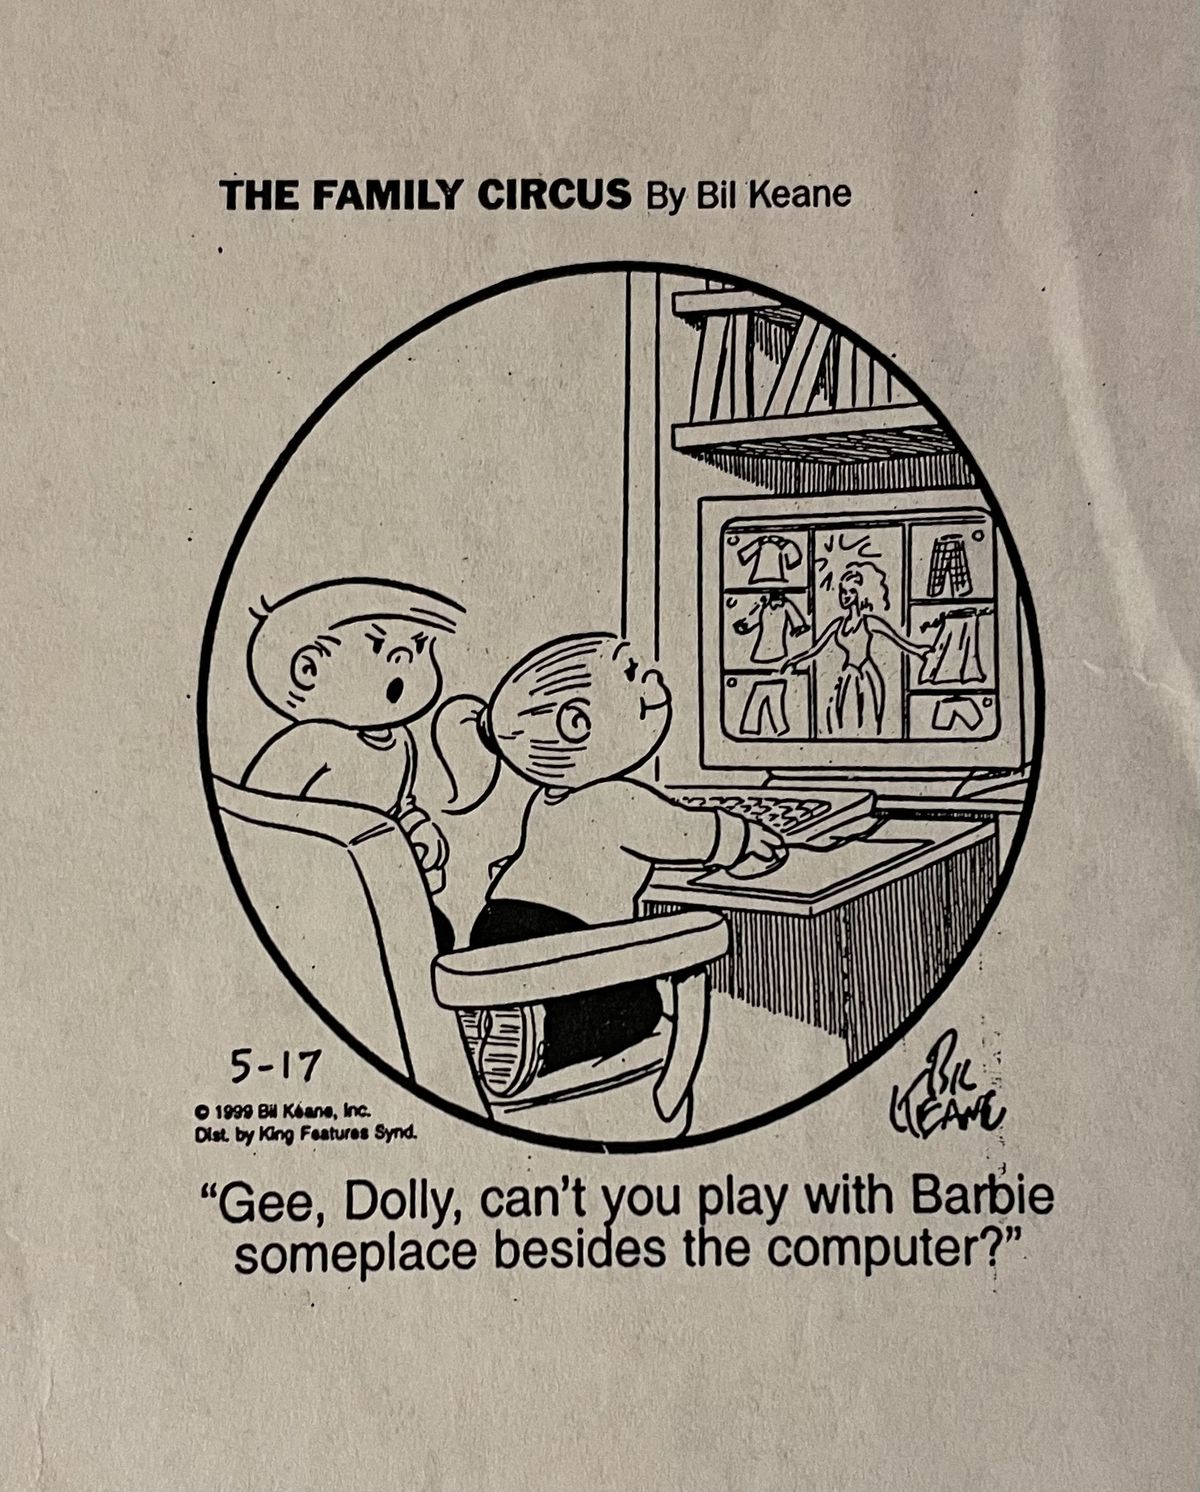 만화 The Family Circus의 스크랩. 어린 소녀가 데스크톱 컴퓨터에서 게임을 하고 있고 화난 표정의 어린 소년이 묻습니다.